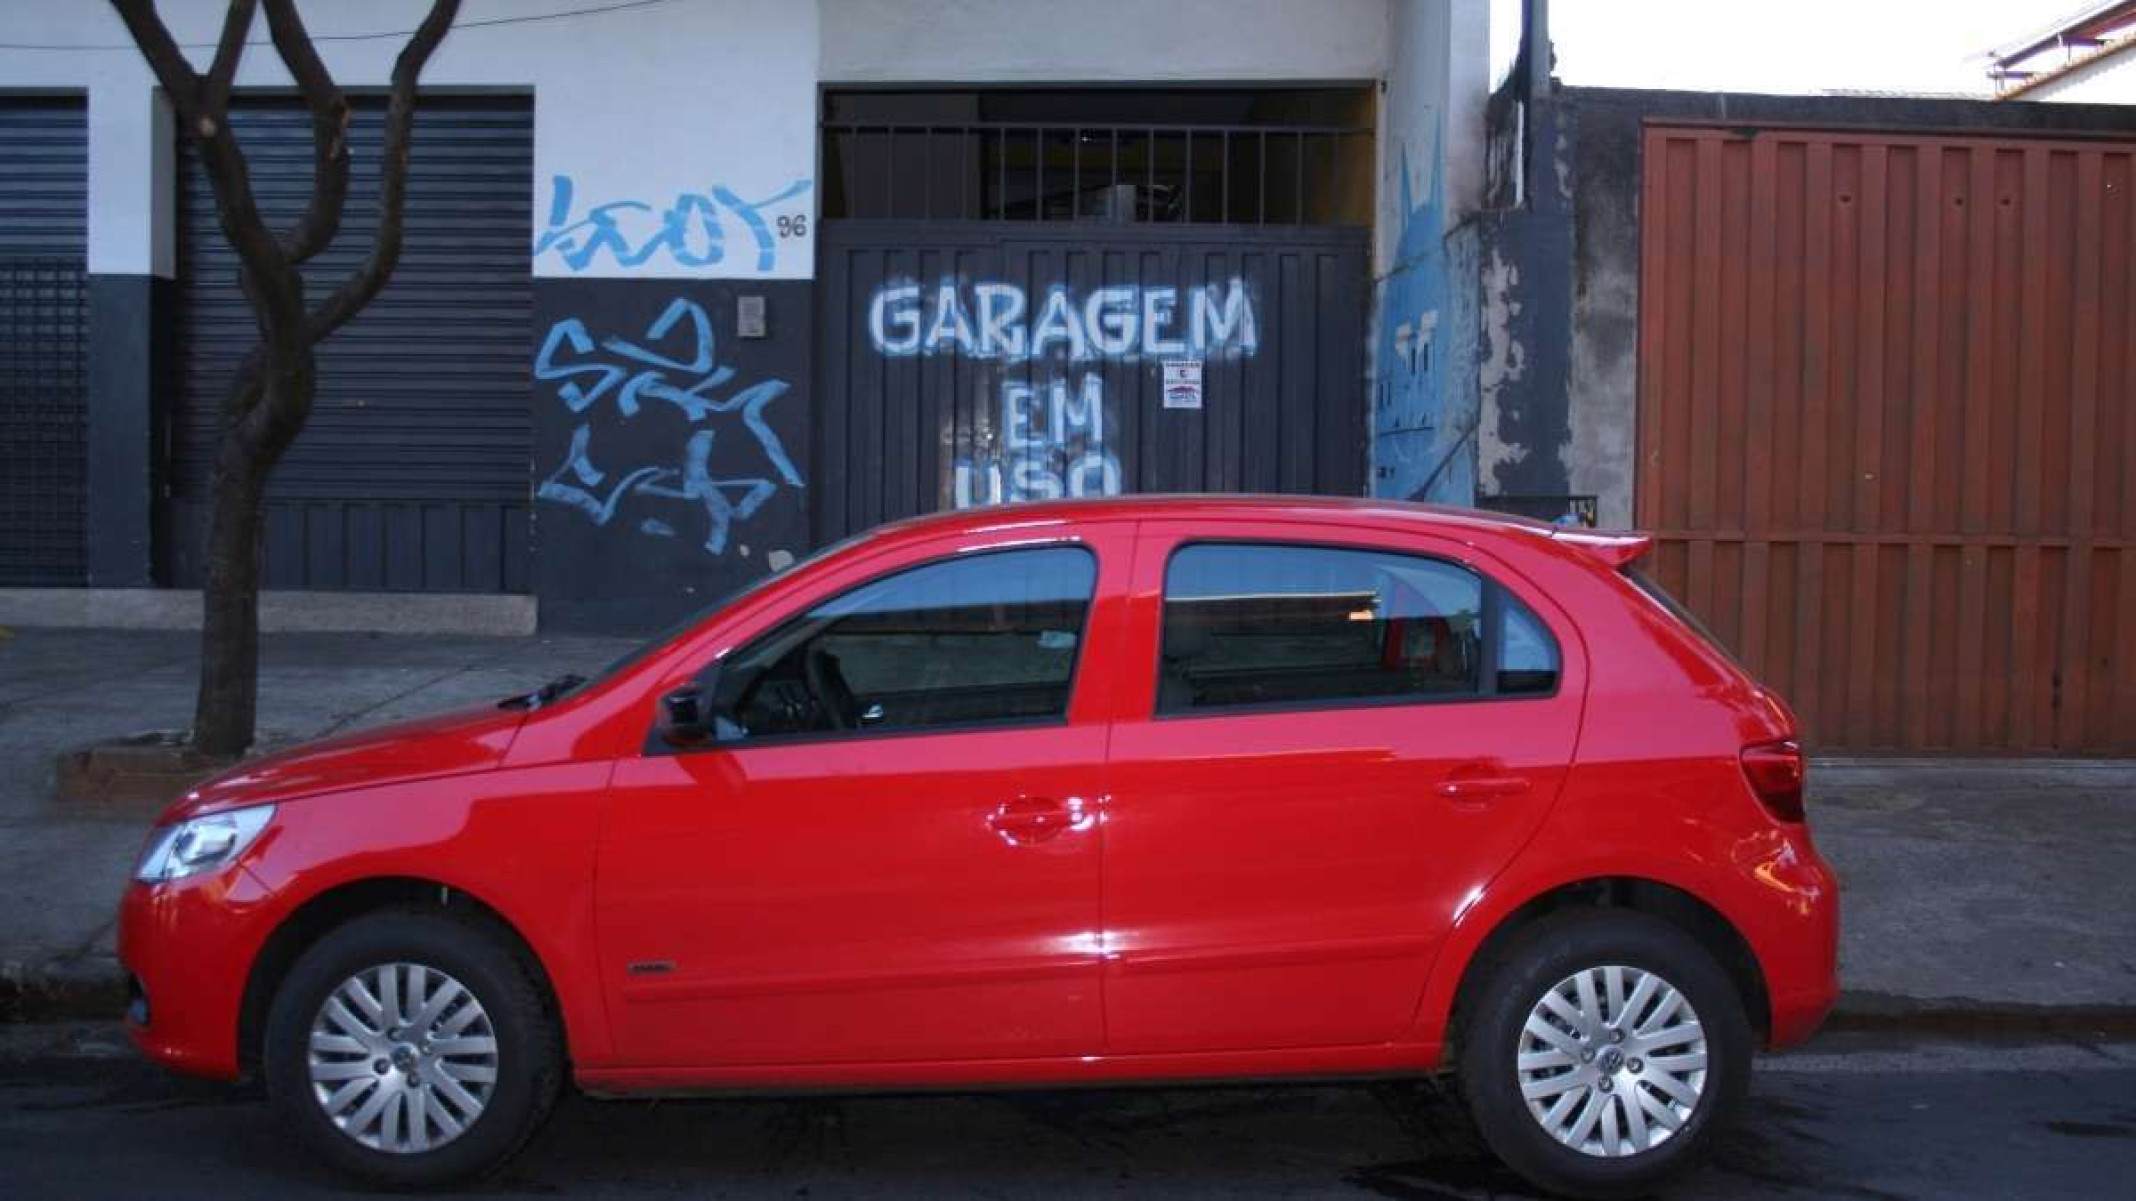 Agentes não podem multar carro estacionado em frente a uma garagem